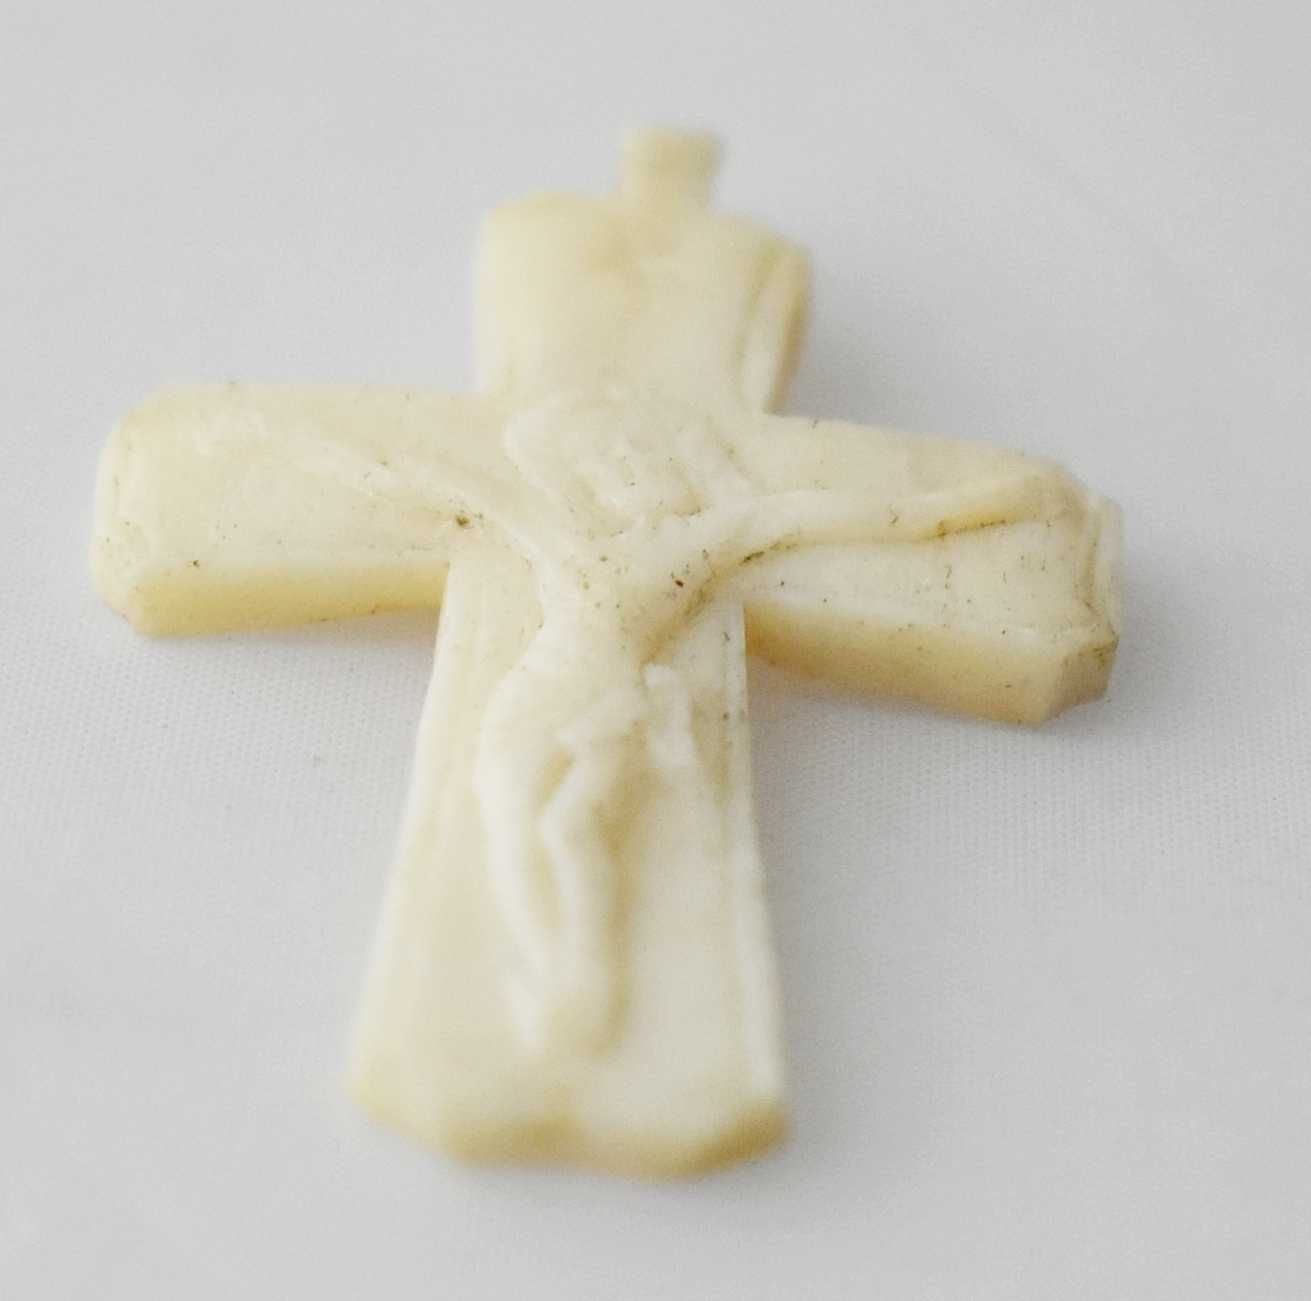 Krzyżyk katolicki kościany